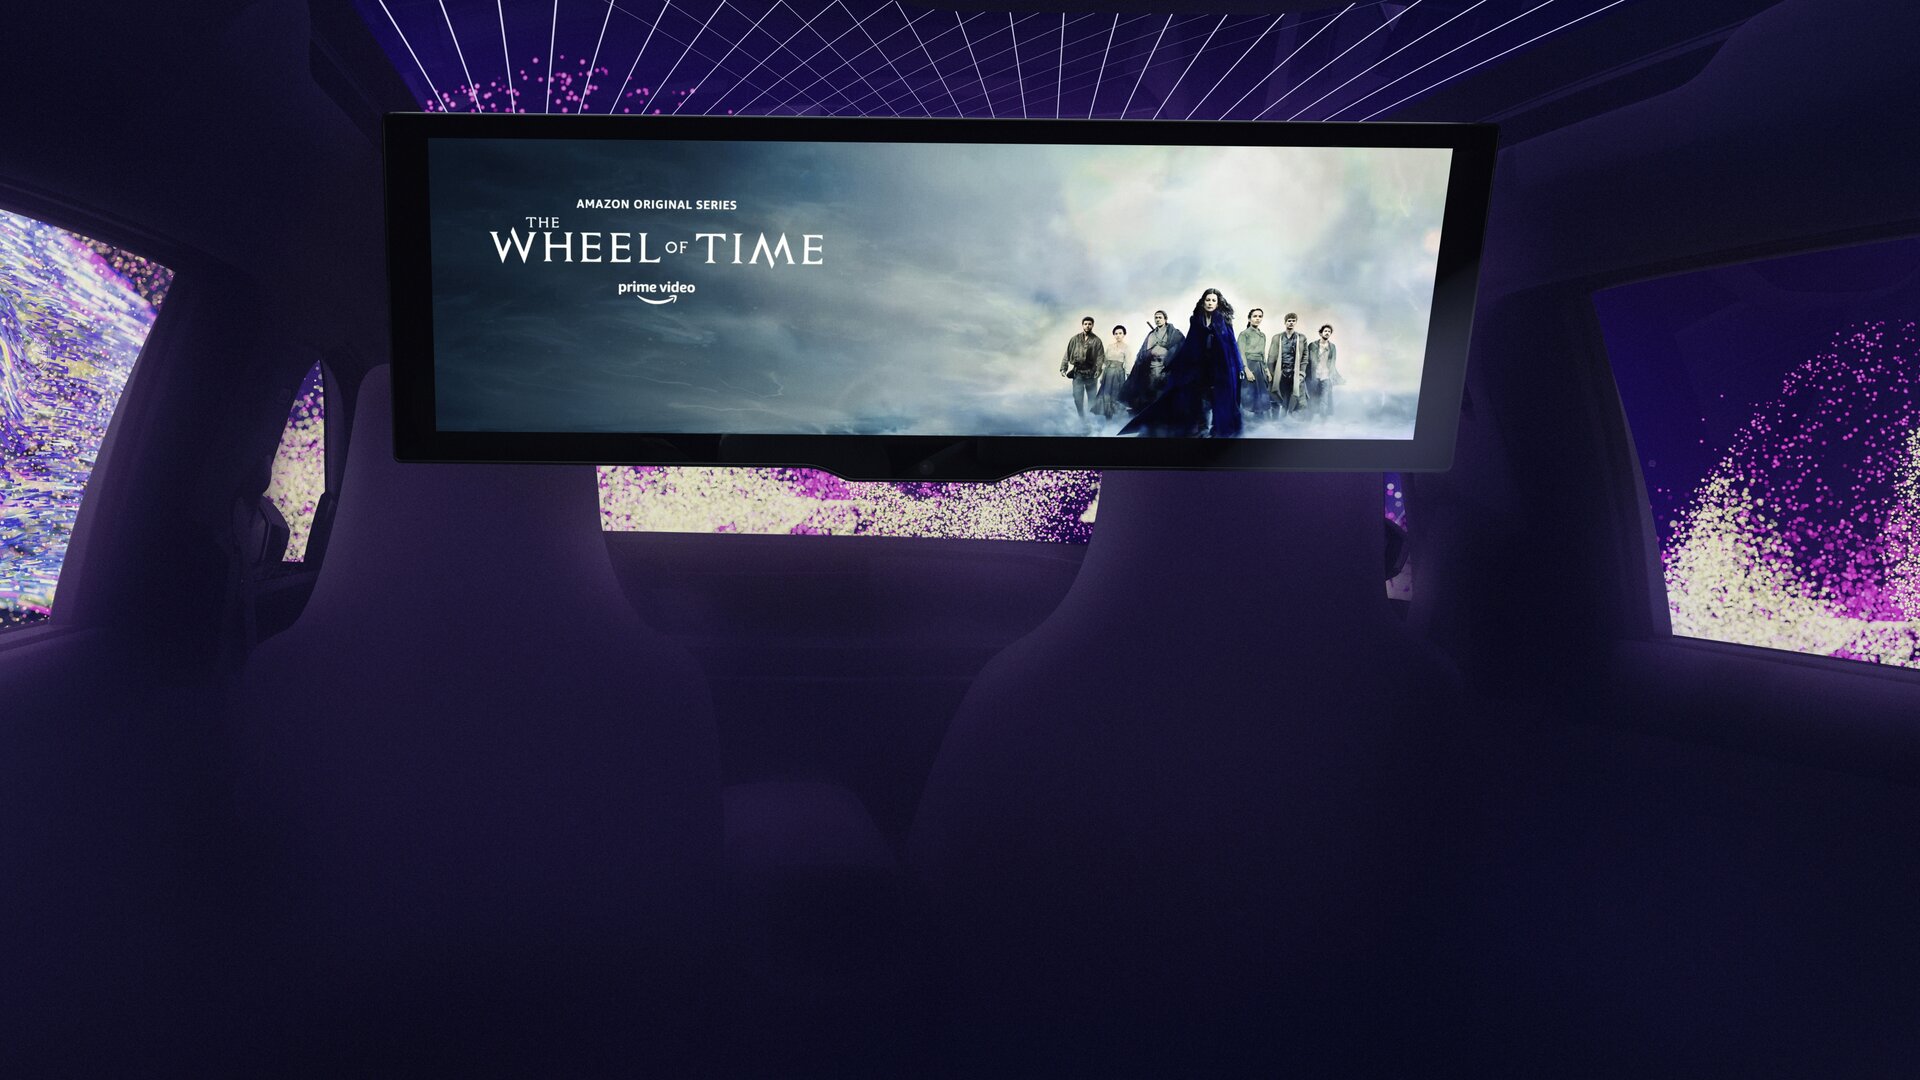 Pantalla de cine: BMW convierte el coche en un cine con una pantalla de 31 pulgadas y Fire TV